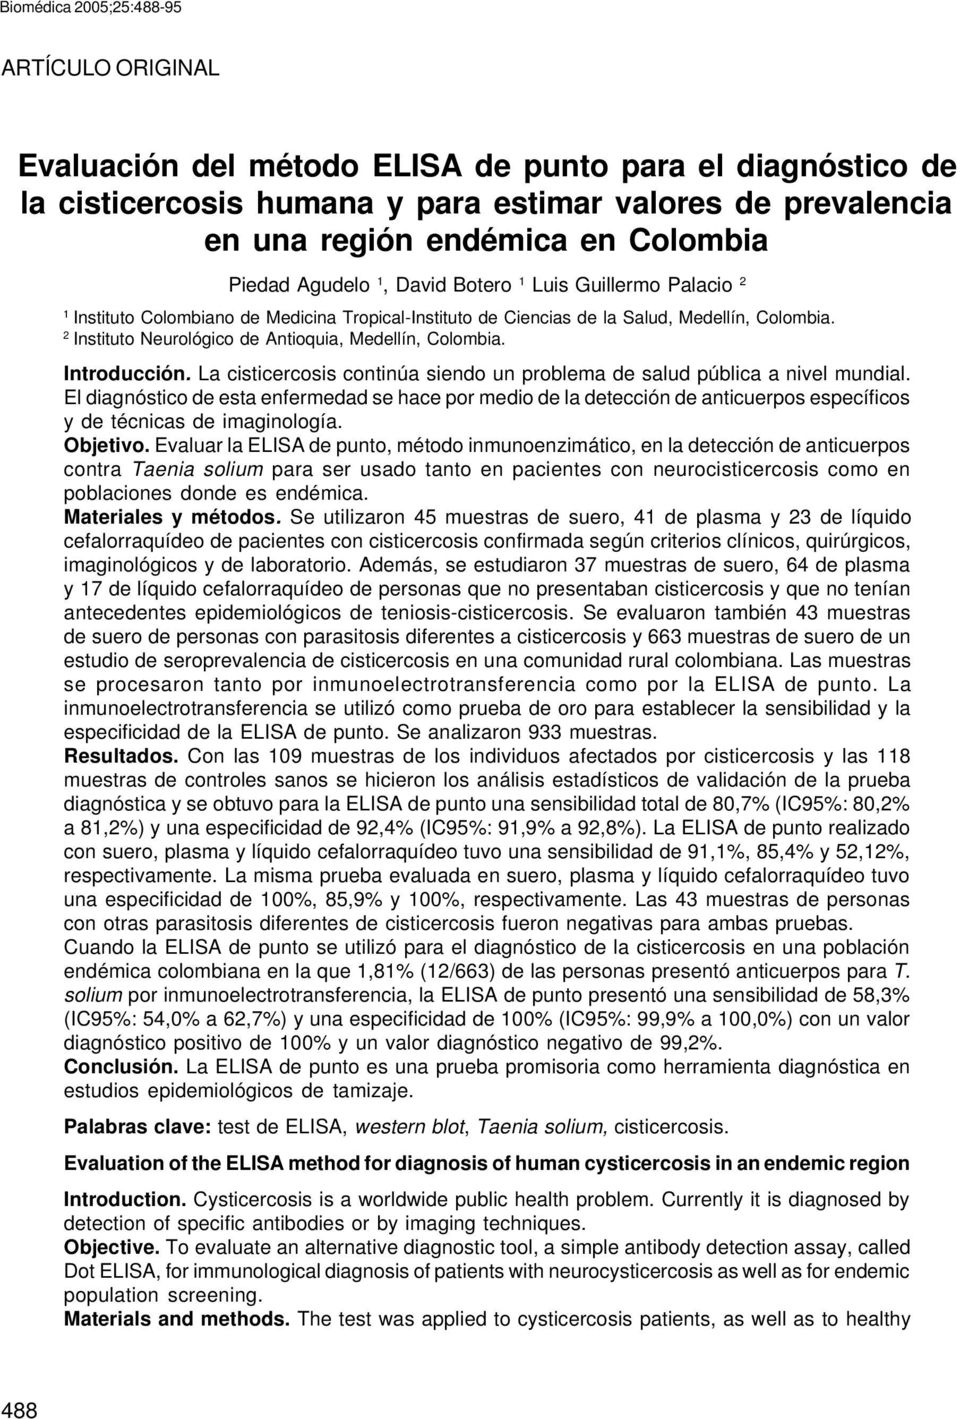 Biomédica 2005;25:488-95 ARTÍCULO ORIGINAL Evaluación del método ELISA de punto para el diagnóstico de la cisticercosis humana y para estimar valores de prevalencia en una región endémica en Colombia